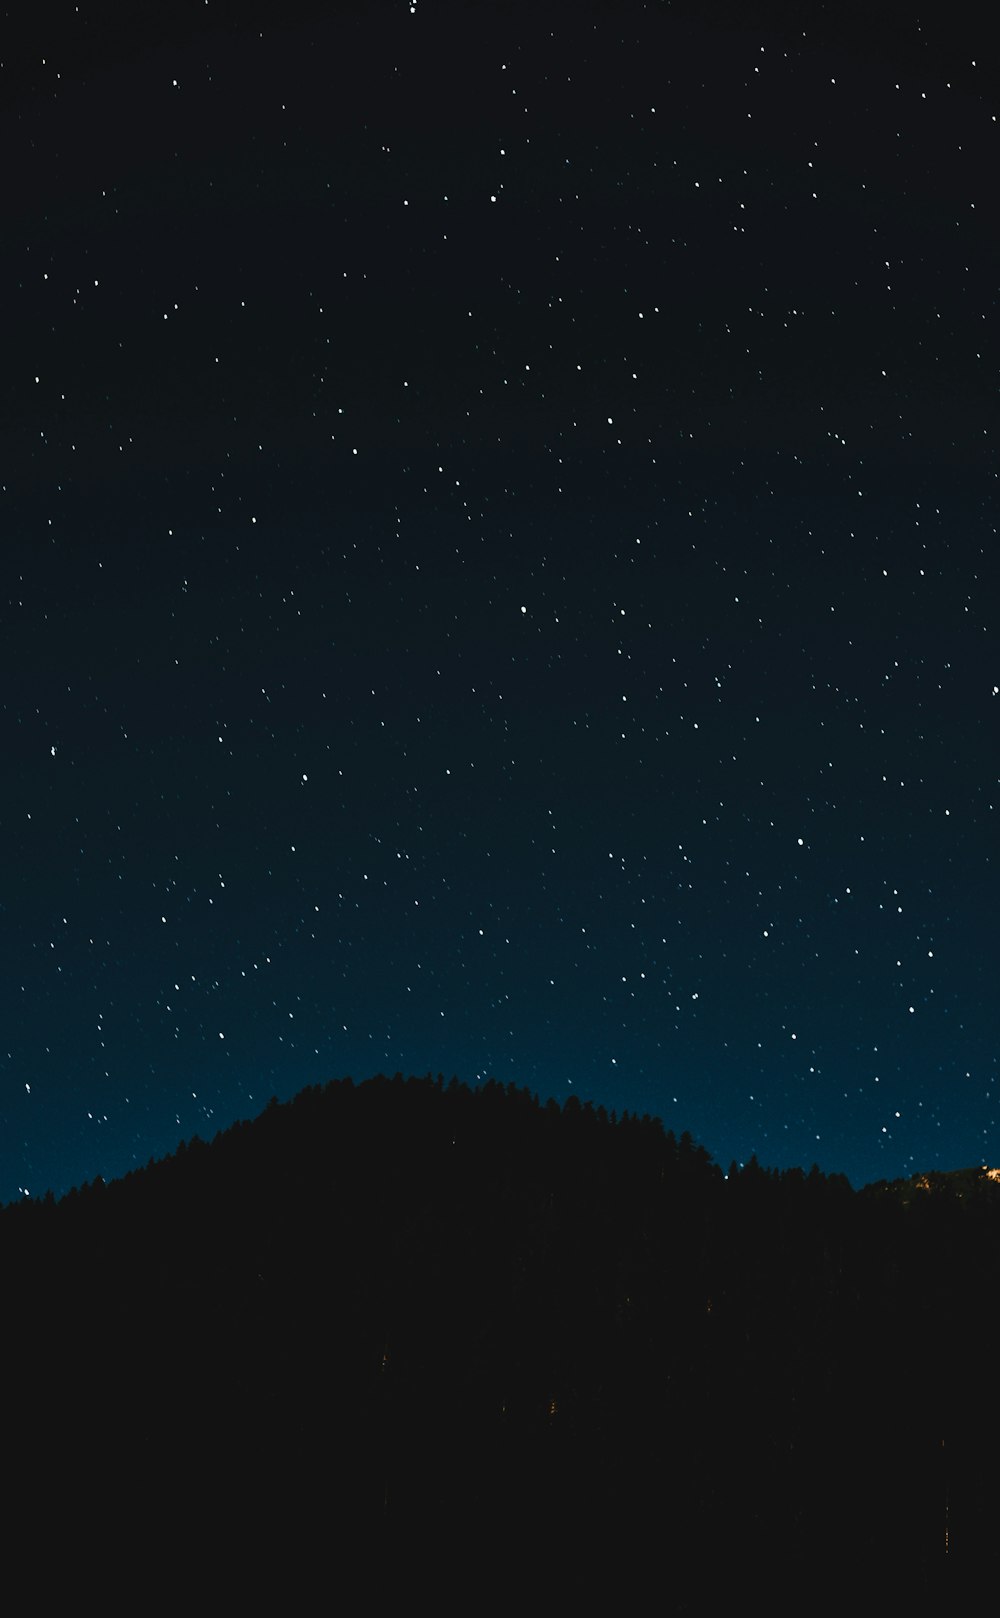 Thưởng thức vẻ đẹp của hàng vạn ngôi sao lung linh trên bầu trời đêm qua những bức ảnh tuyệt đẹp.